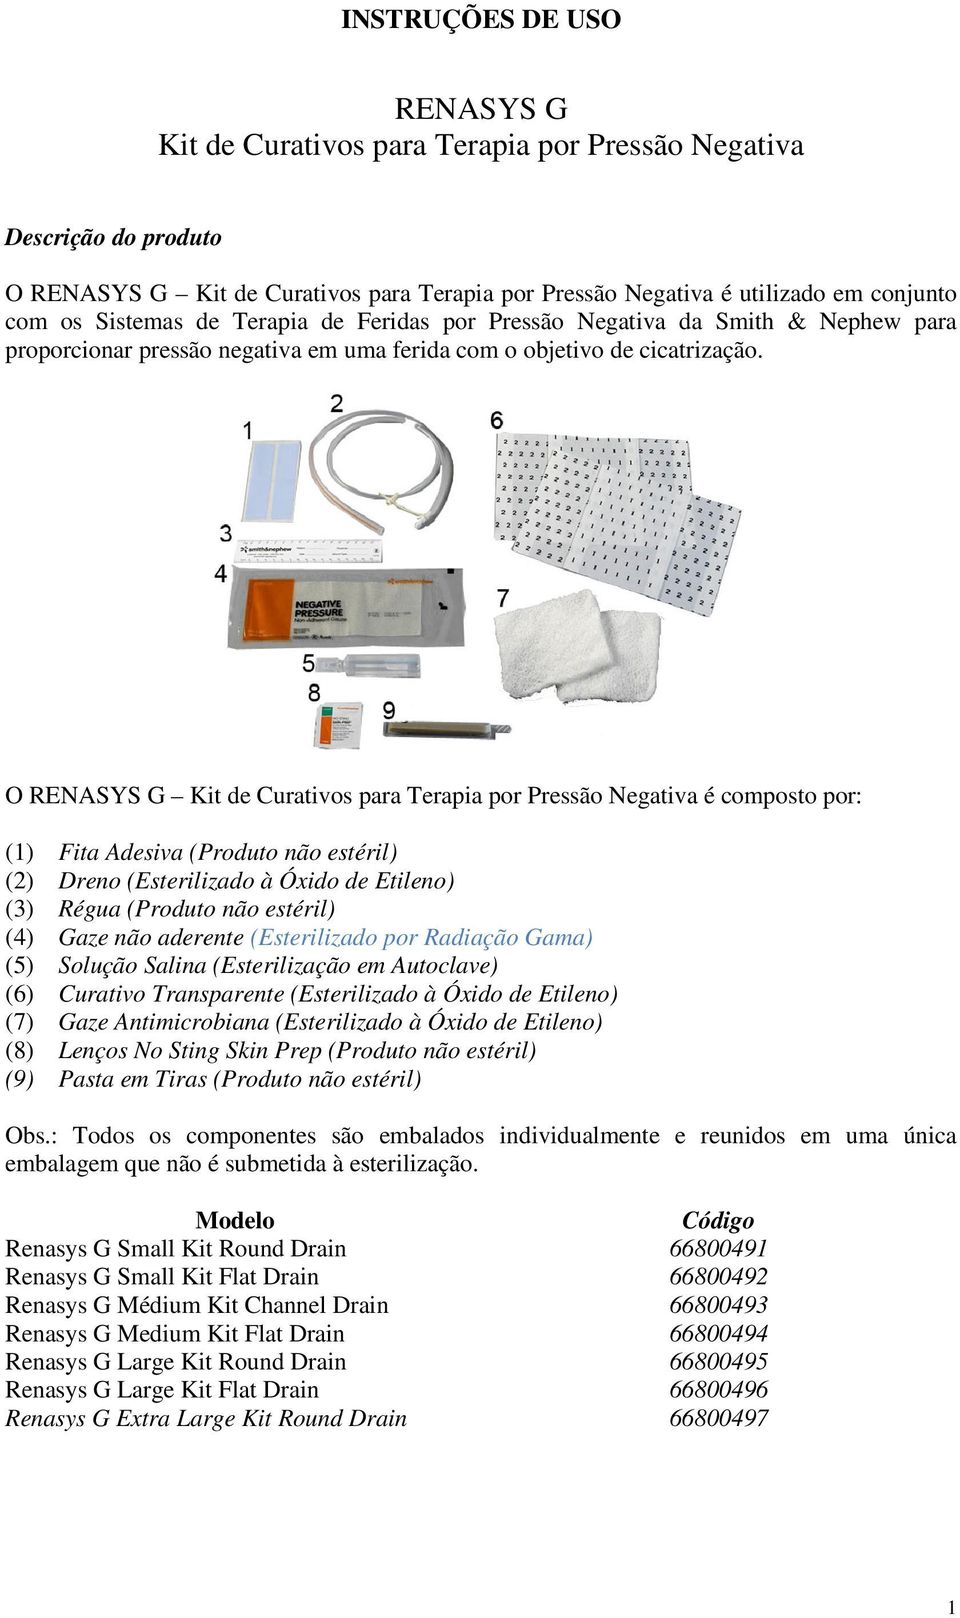 O RENASYS G Kit de Curativos para Terapia por Pressão Negativa é composto por: () Fita Adesiva (Produto não estéril) (2) Dreno (Esterilizado à Óxido de Etileno) (3) Régua (Produto não estéril) (4)